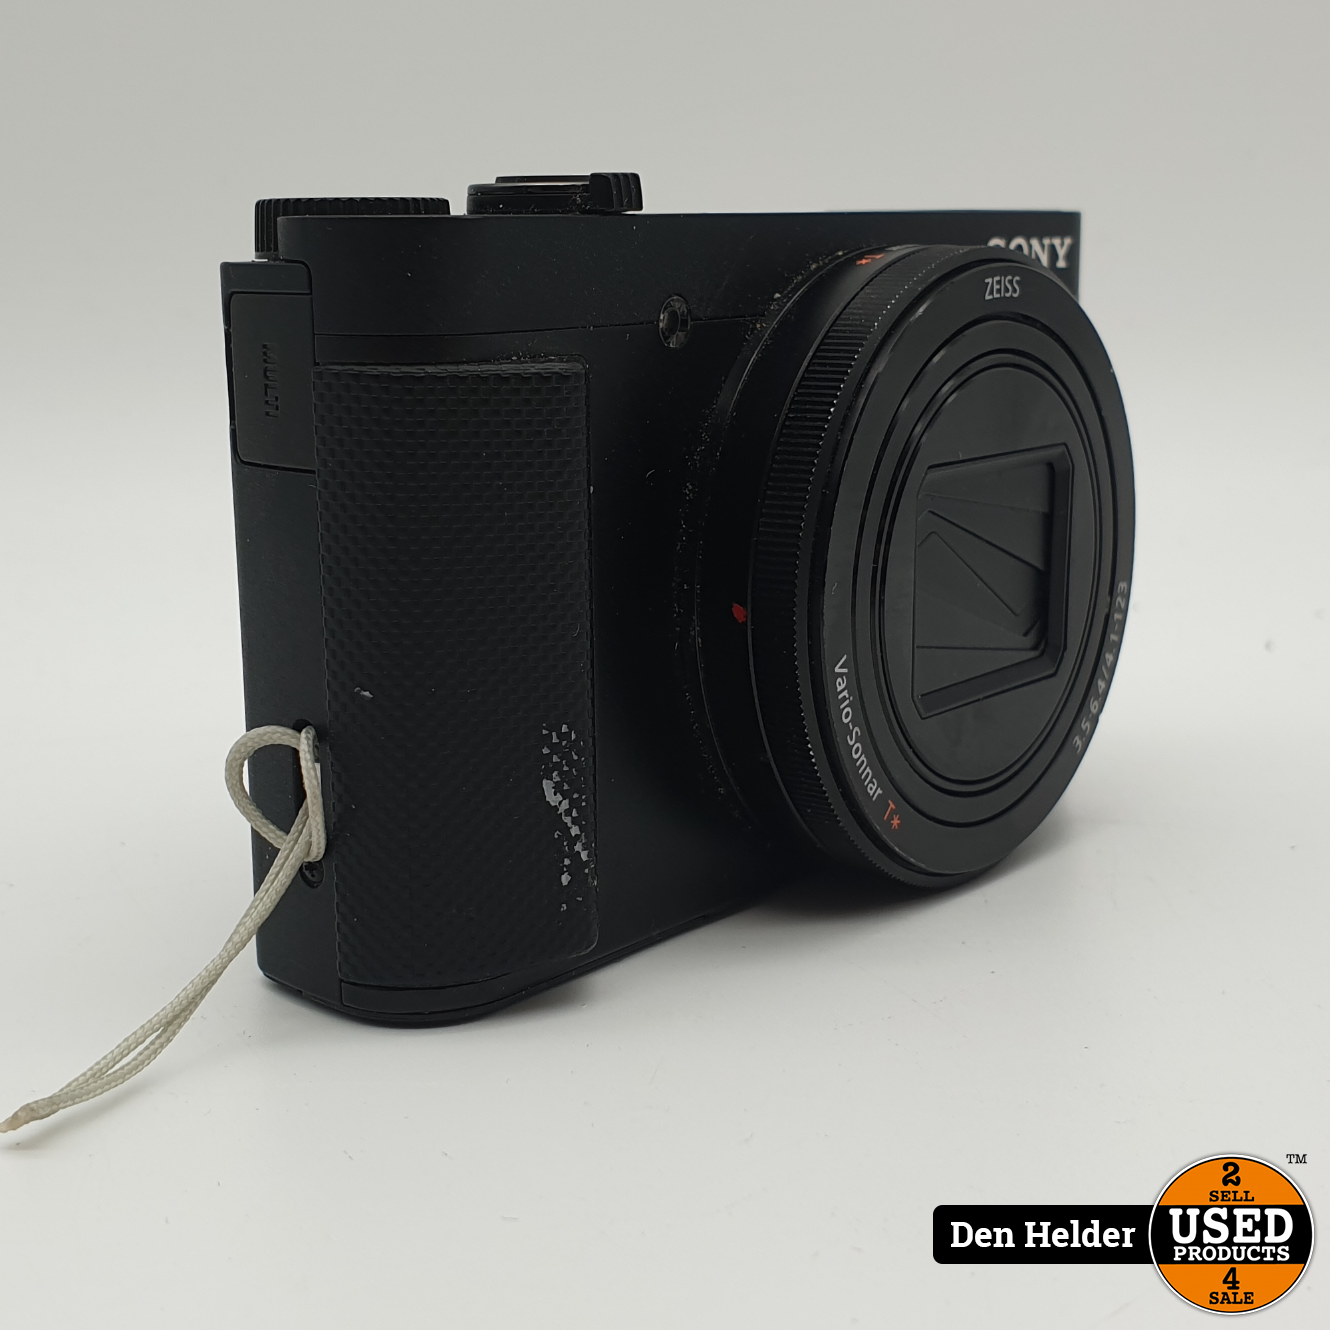 voorzetsel Nacht metgezel Sony DSC-HX90V Compact Camera 18.2 Megapixel - In Nette Staat - Used  Products Den Helder